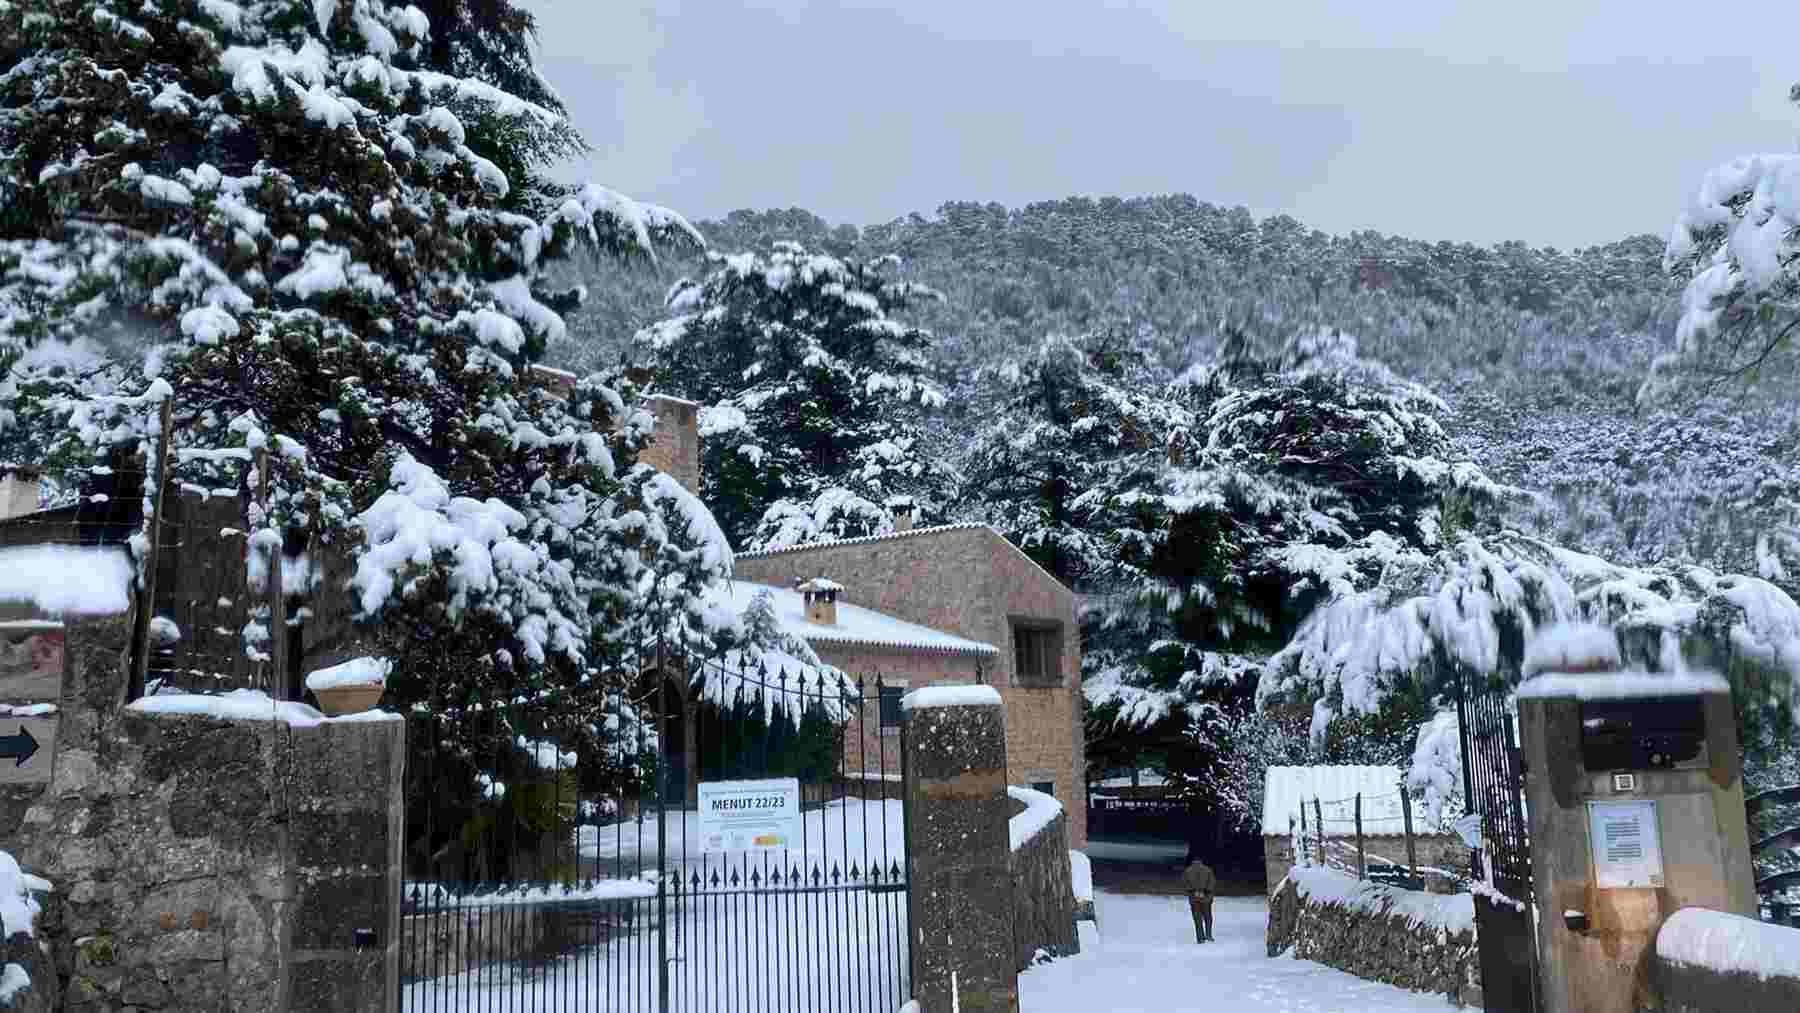 Nieve en el Centre Forestal (CEFOR) en Menut. Escorca, en una imagen de Xarxa Forestal. – XARXA FORESTAL